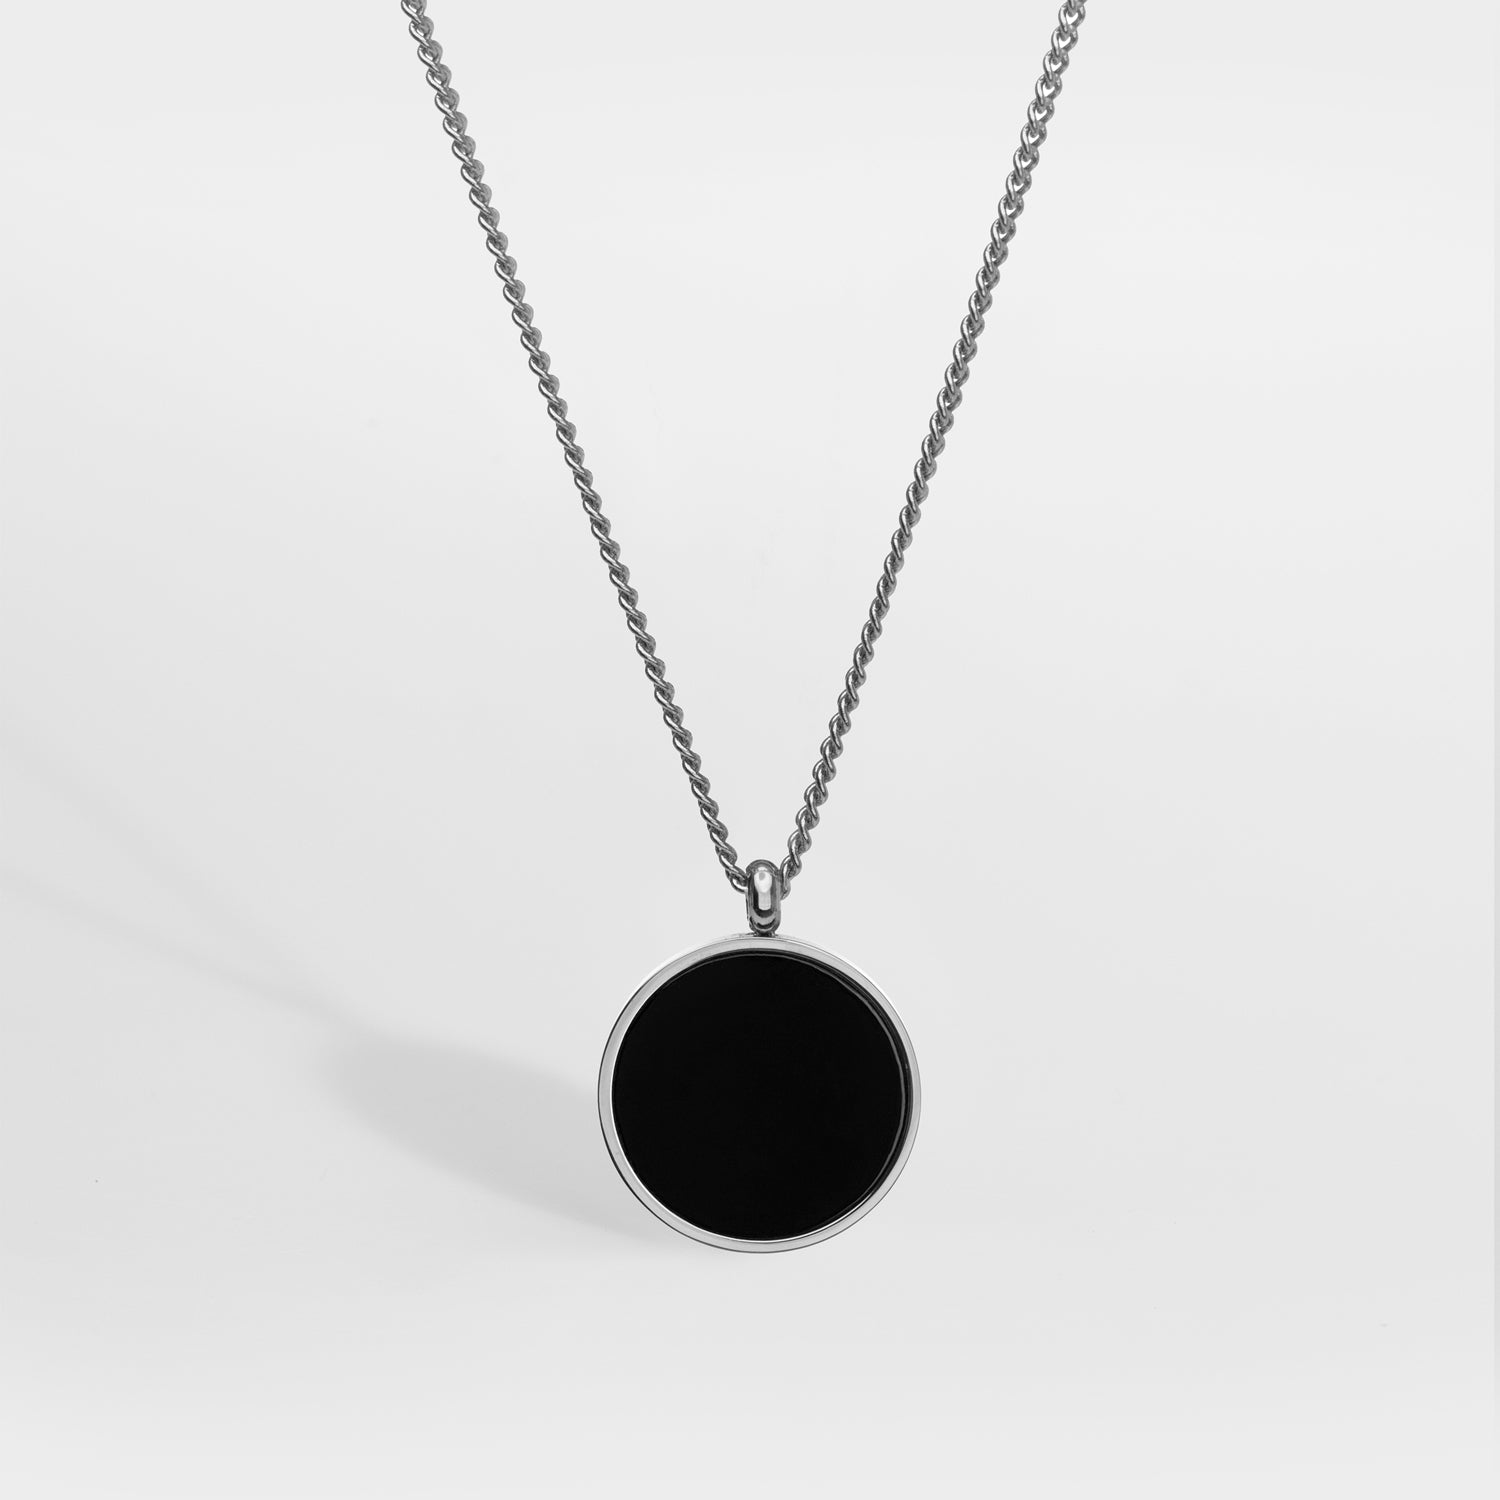 Black Onyx halskæde - Sølvtonet